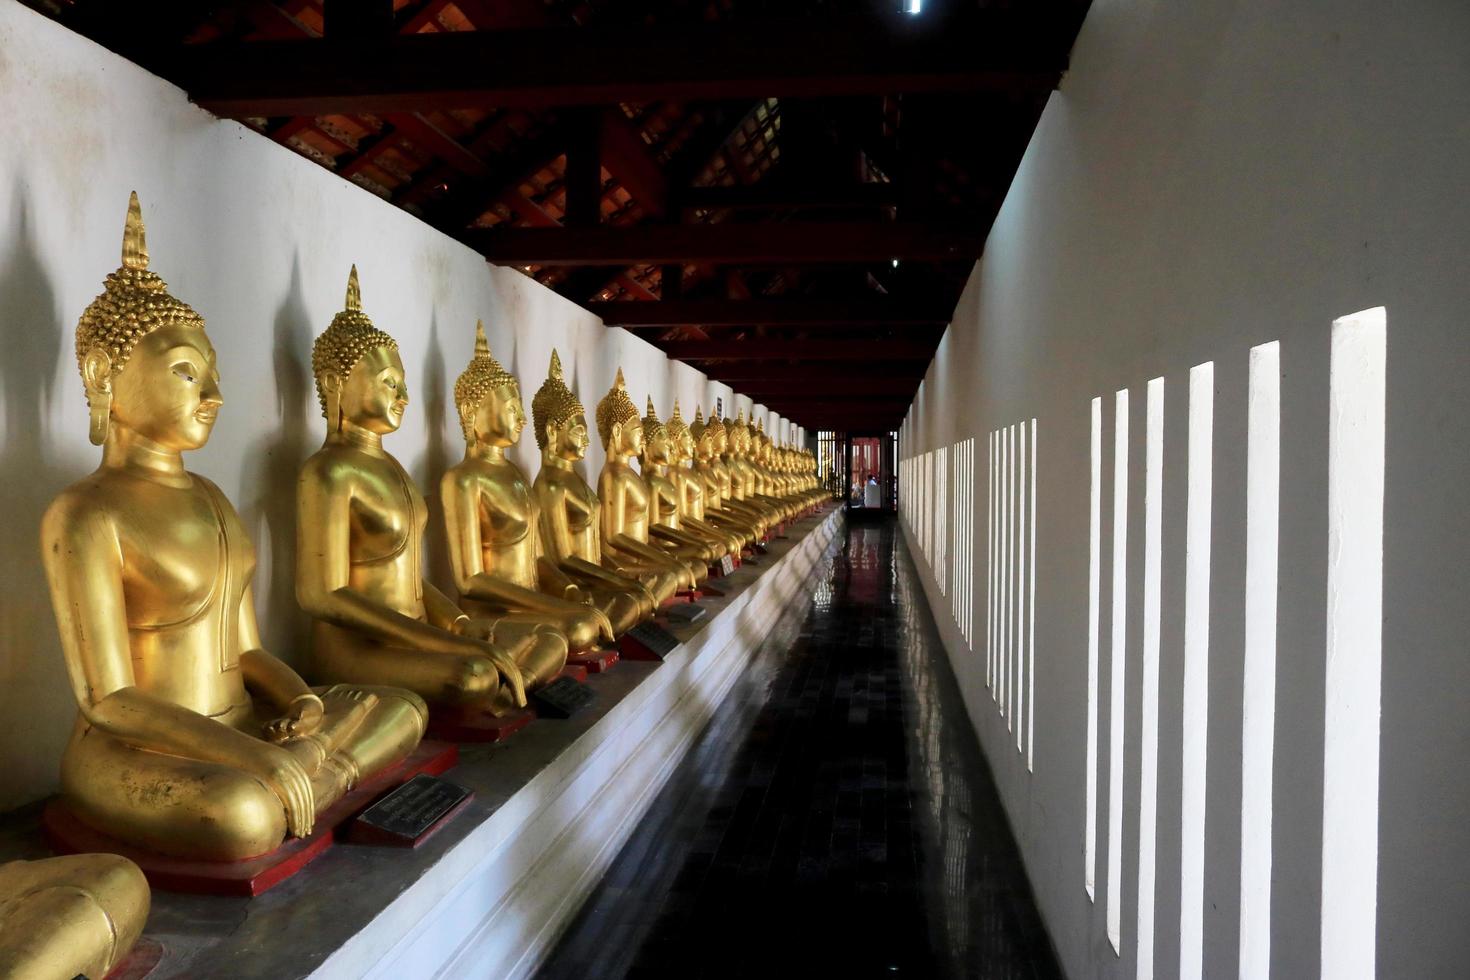 ville, pays, mm jj, aaaa - statues de Bouddha en or dans le temple photo